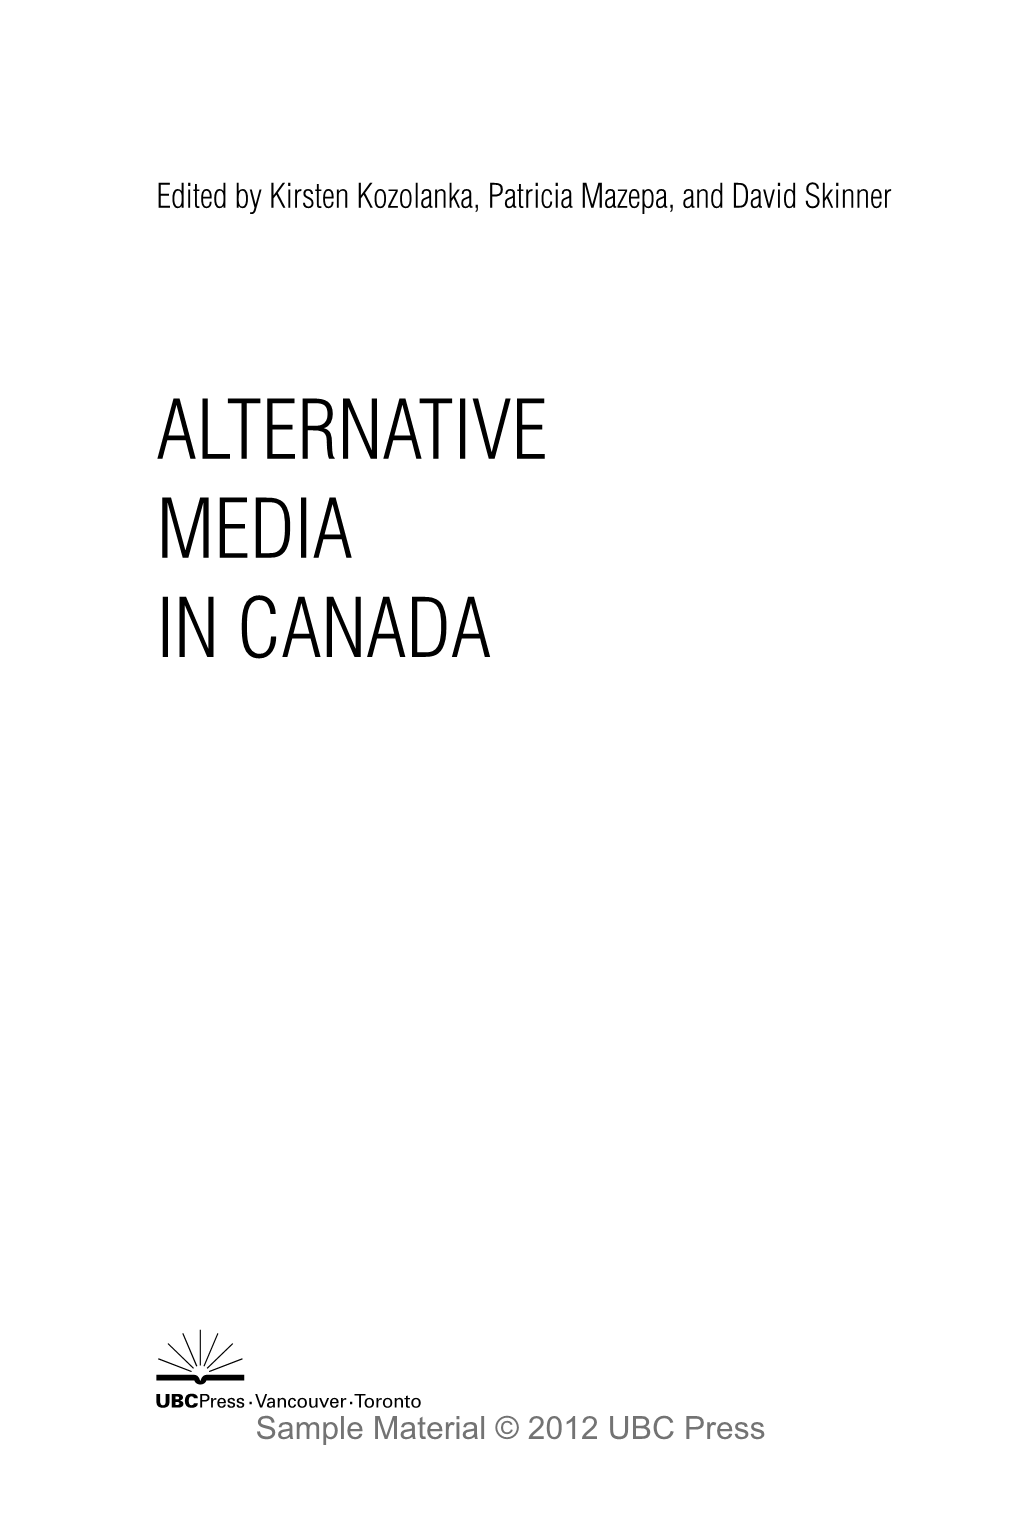 Alternative Media in Canada